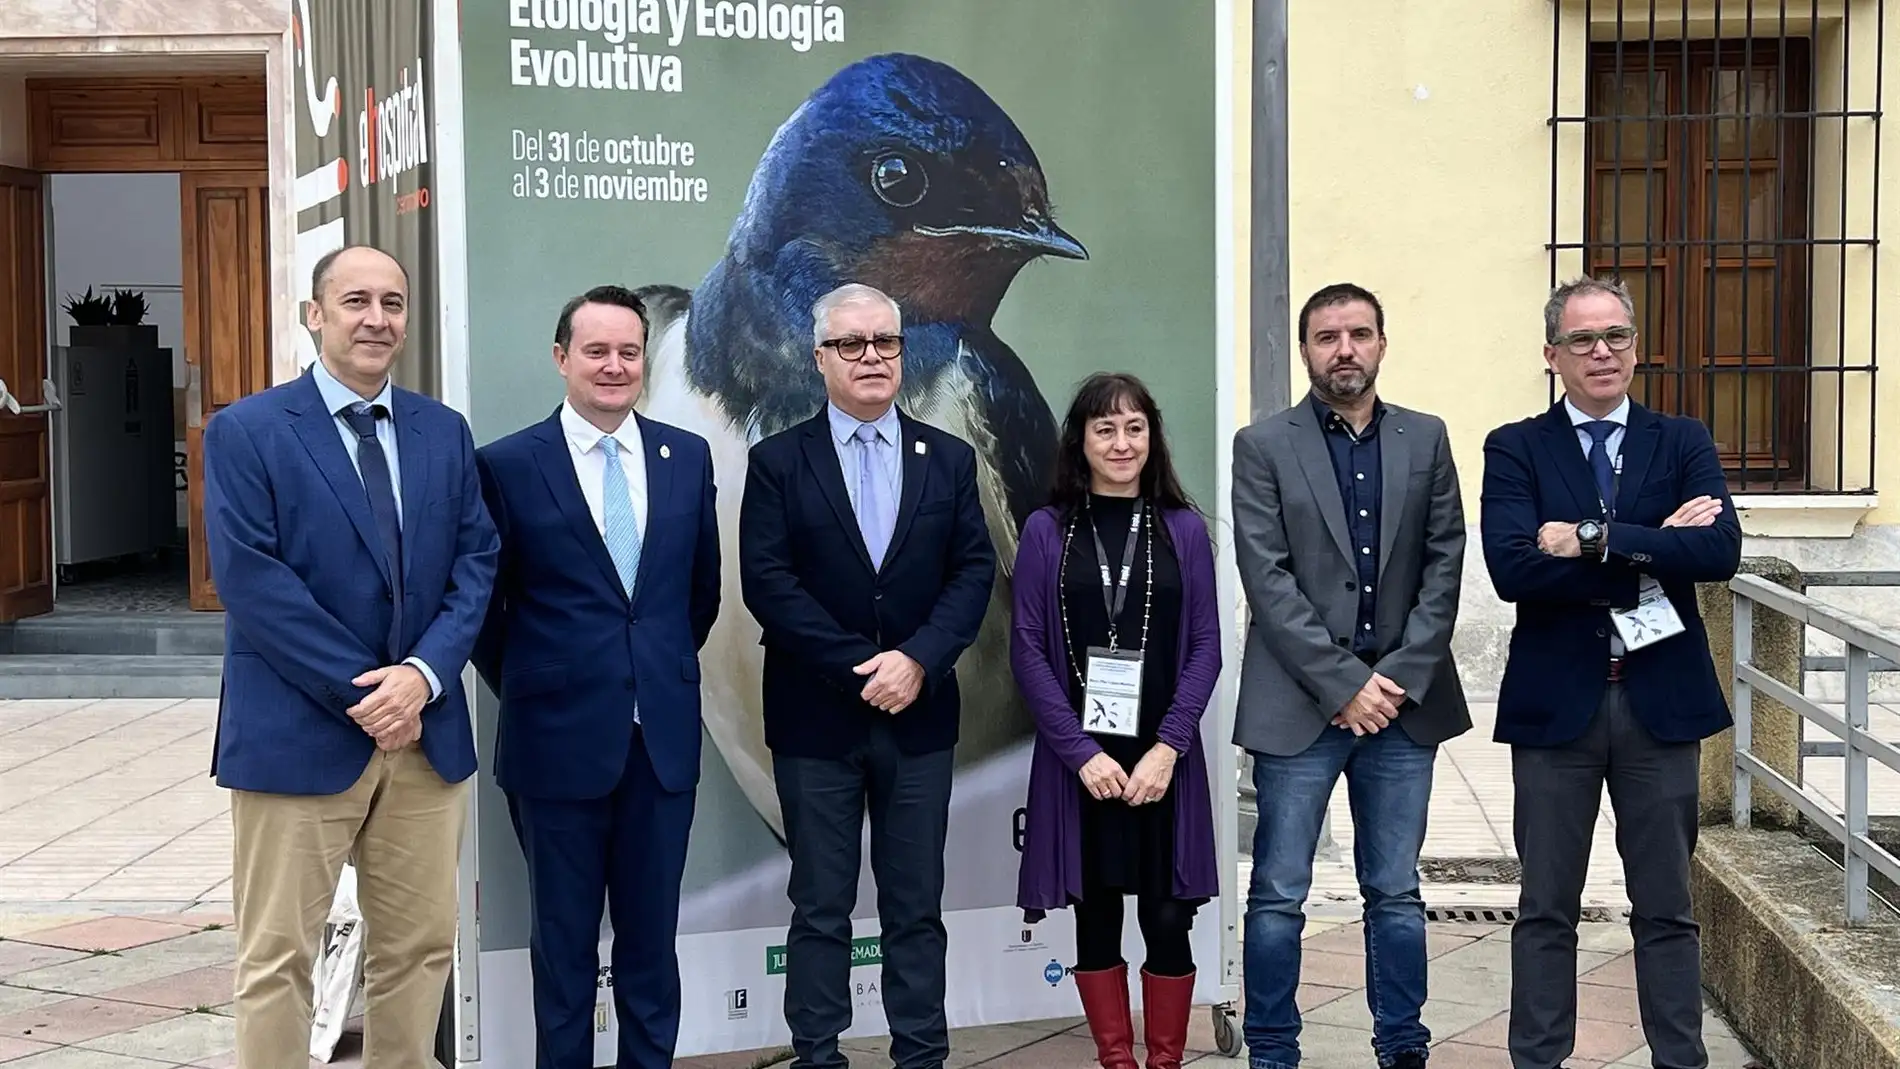 Un congreso nacional e iberoamericano de etología y ecología evolutiva reúne este viernes en Badajoz a 150 científicos de 23 países